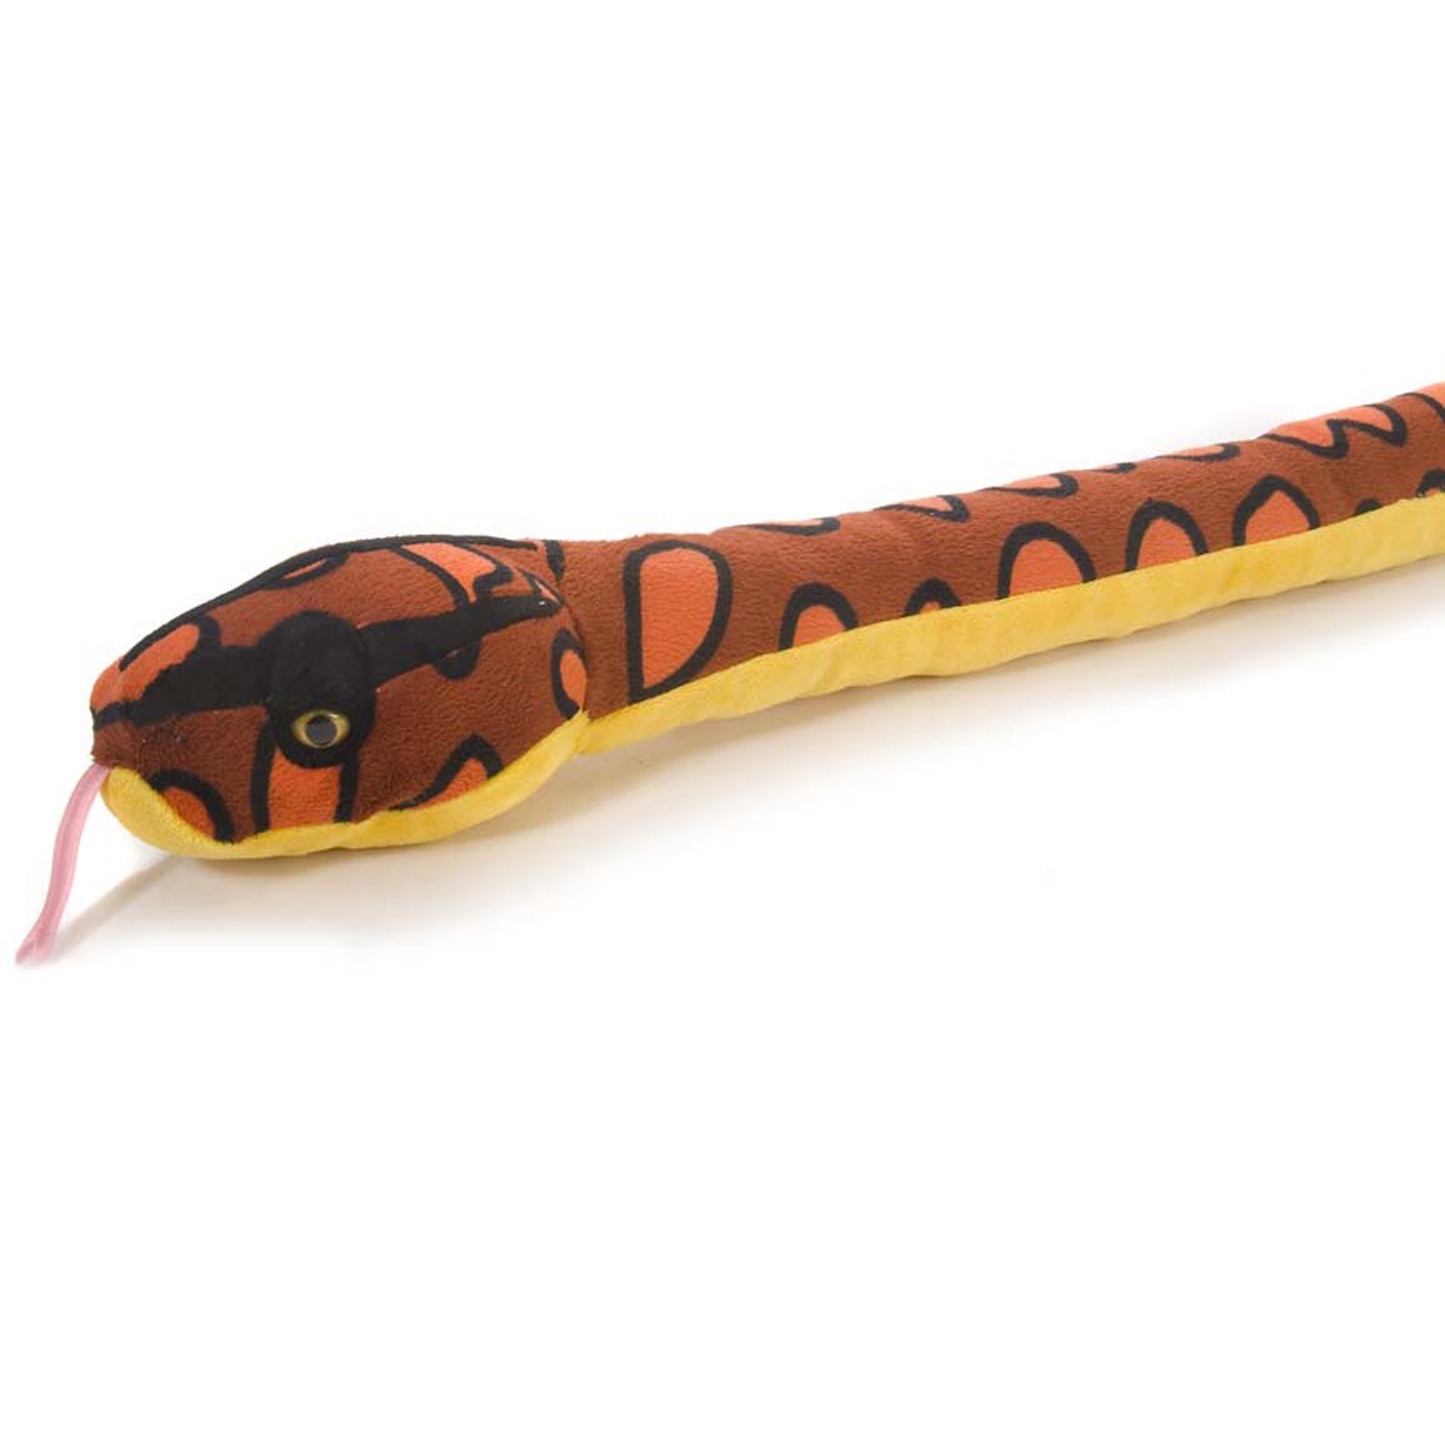 Игрушки удав. Snake Anaconda Soft Plush Toy 54/137cm stuffed. Питон удав мягкая игрушка 4м. Питон игрушка šleih. Игрушки Ханса удав.